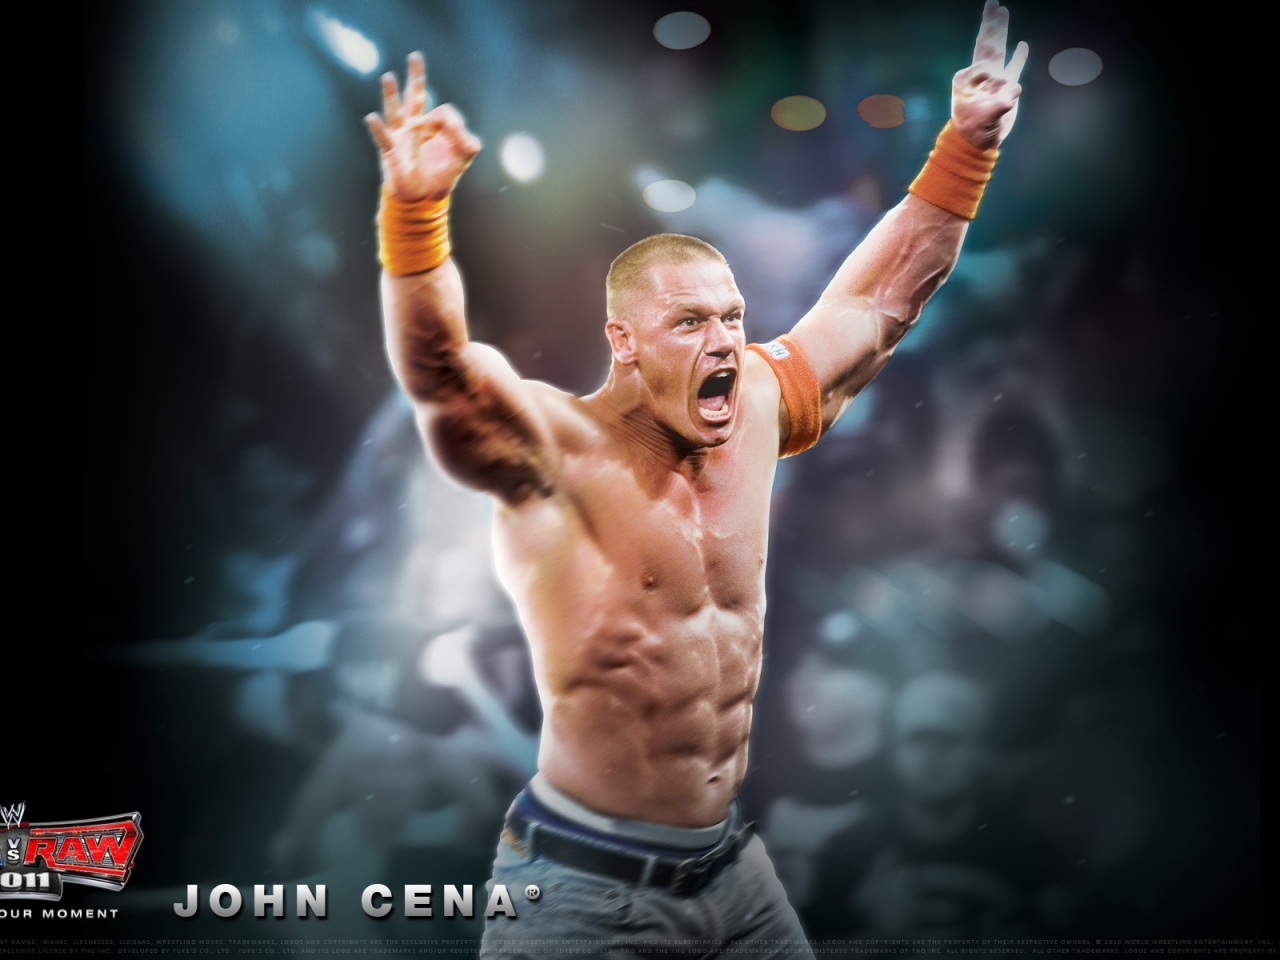 John Cena for 1280 x 960 resolution